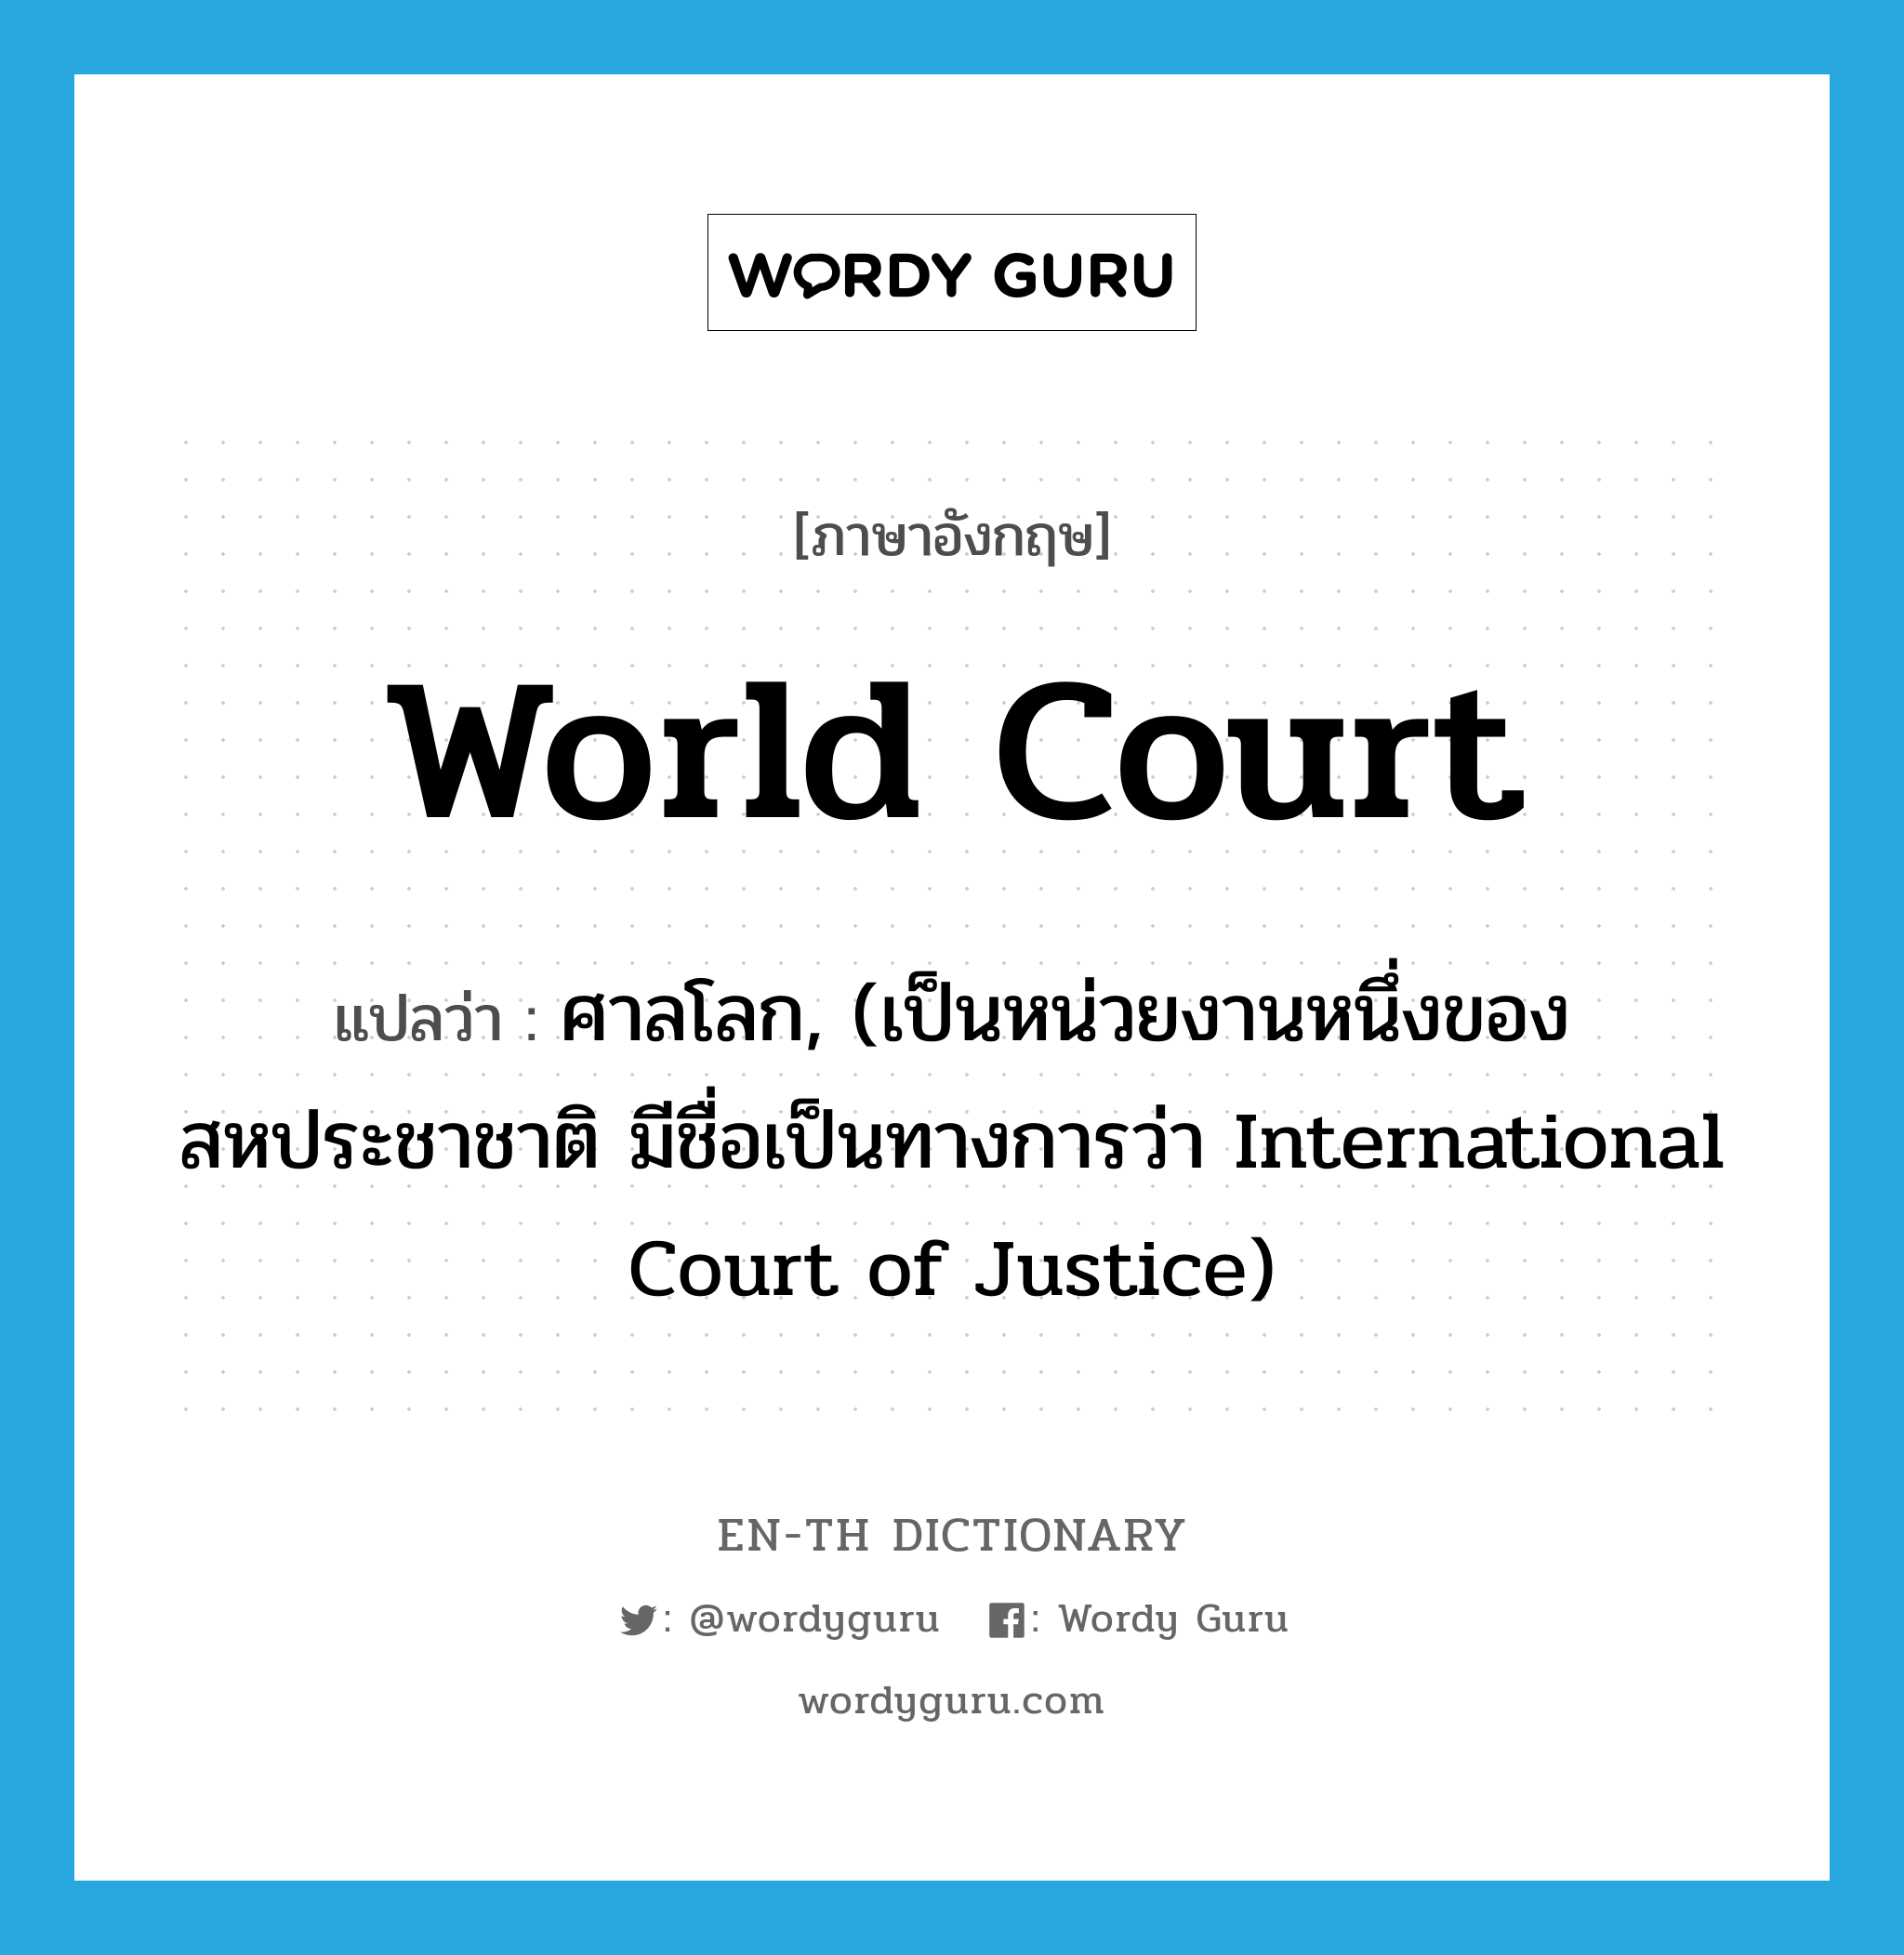 World Court แปลว่า?, คำศัพท์ภาษาอังกฤษ World Court แปลว่า ศาลโลก, (เป็นหน่วยงานหนึ่งของสหประชาชาติ มีชื่อเป็นทางการว่า International Court of Justice) ประเภท N หมวด N